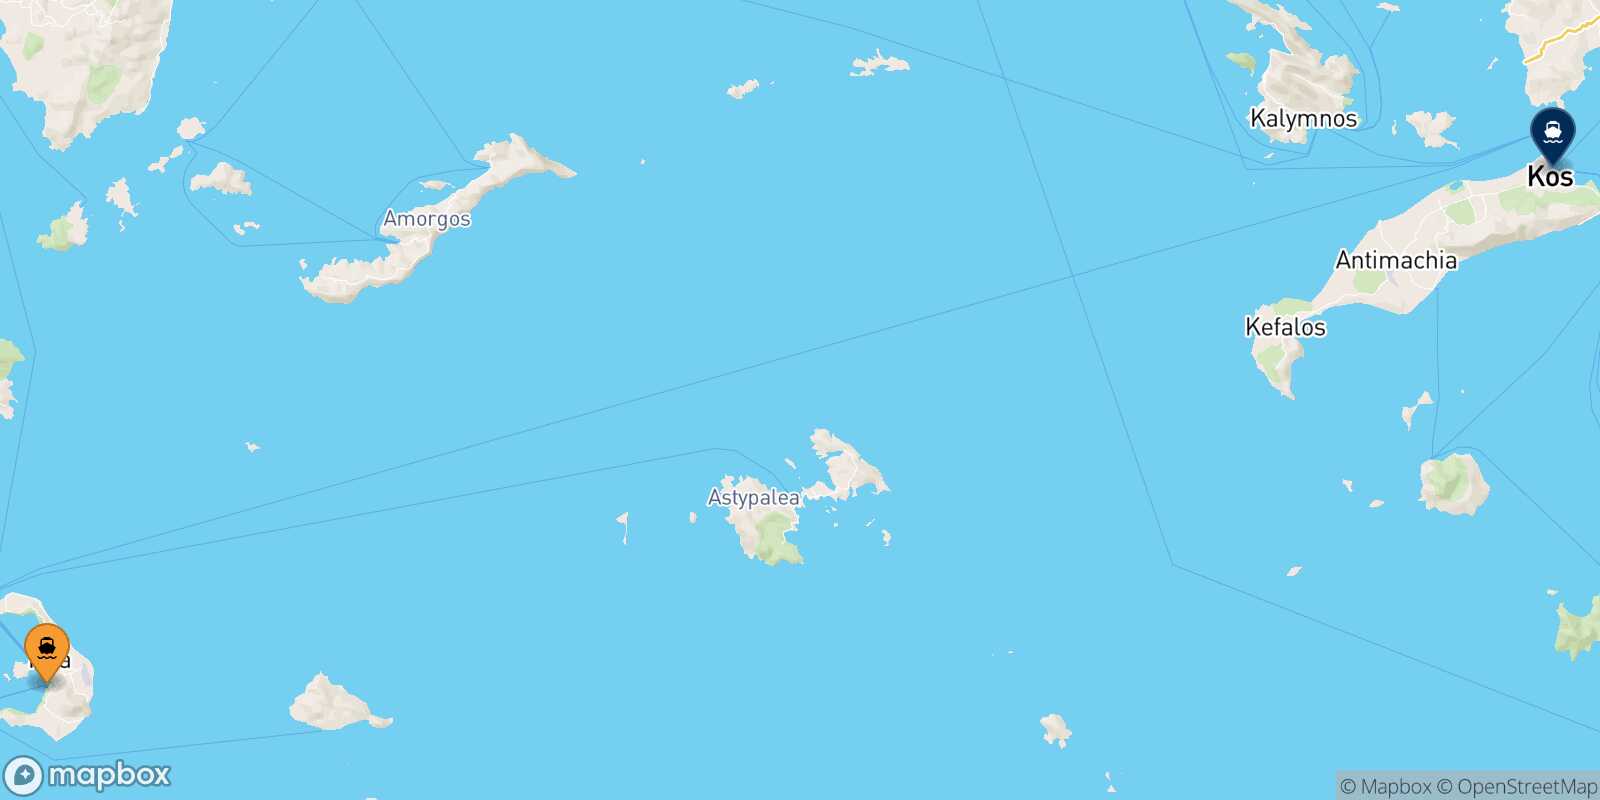 Thira (Santorini) Kos route map